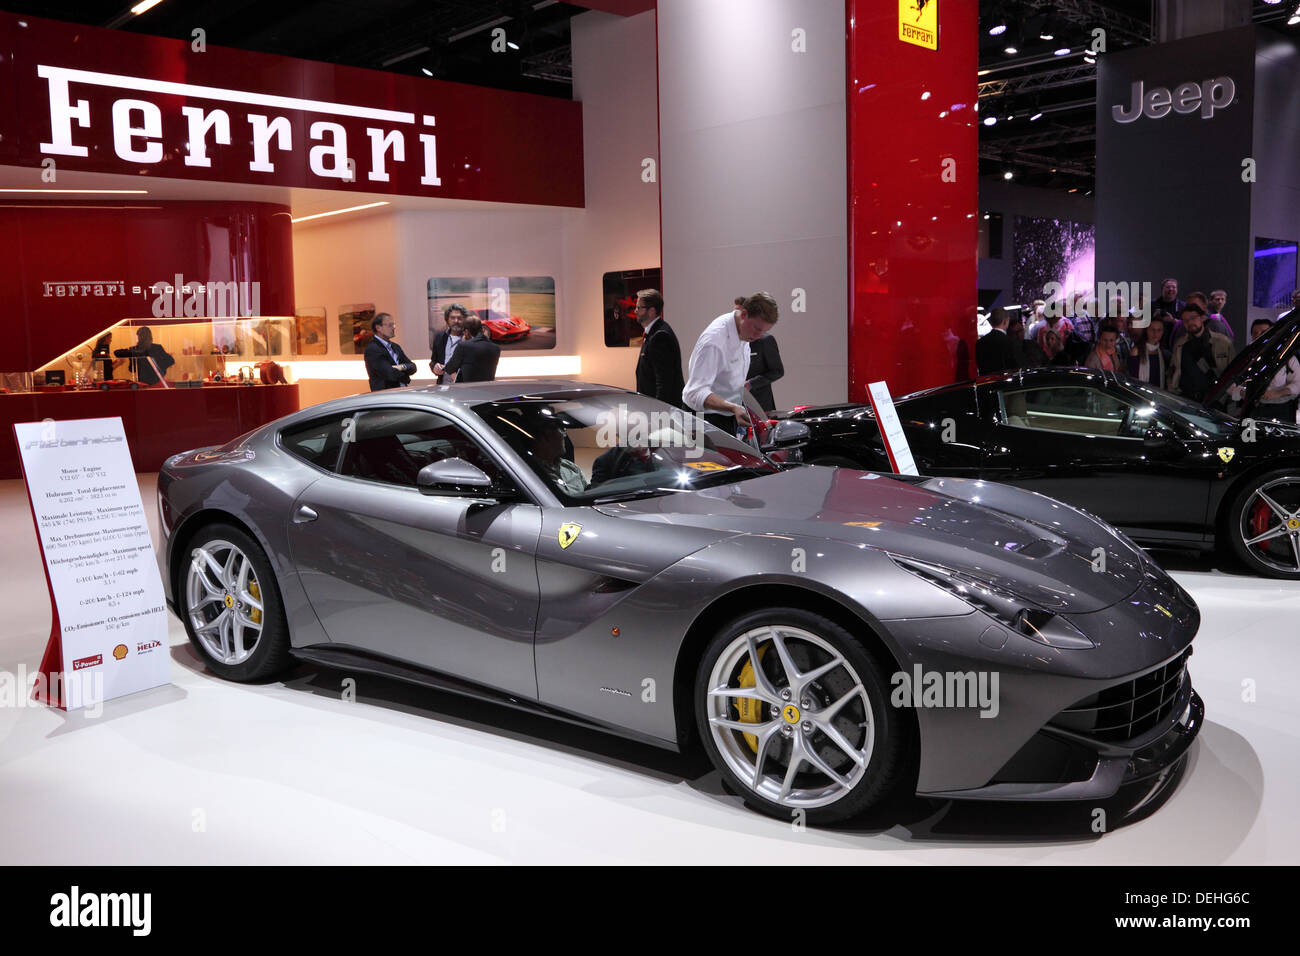 International Motor Show de Francfort, en Allemagne. La présentation de la Ferrari F12 berlinetta à la 65ème IAA de Francfort, Allemagne Banque D'Images